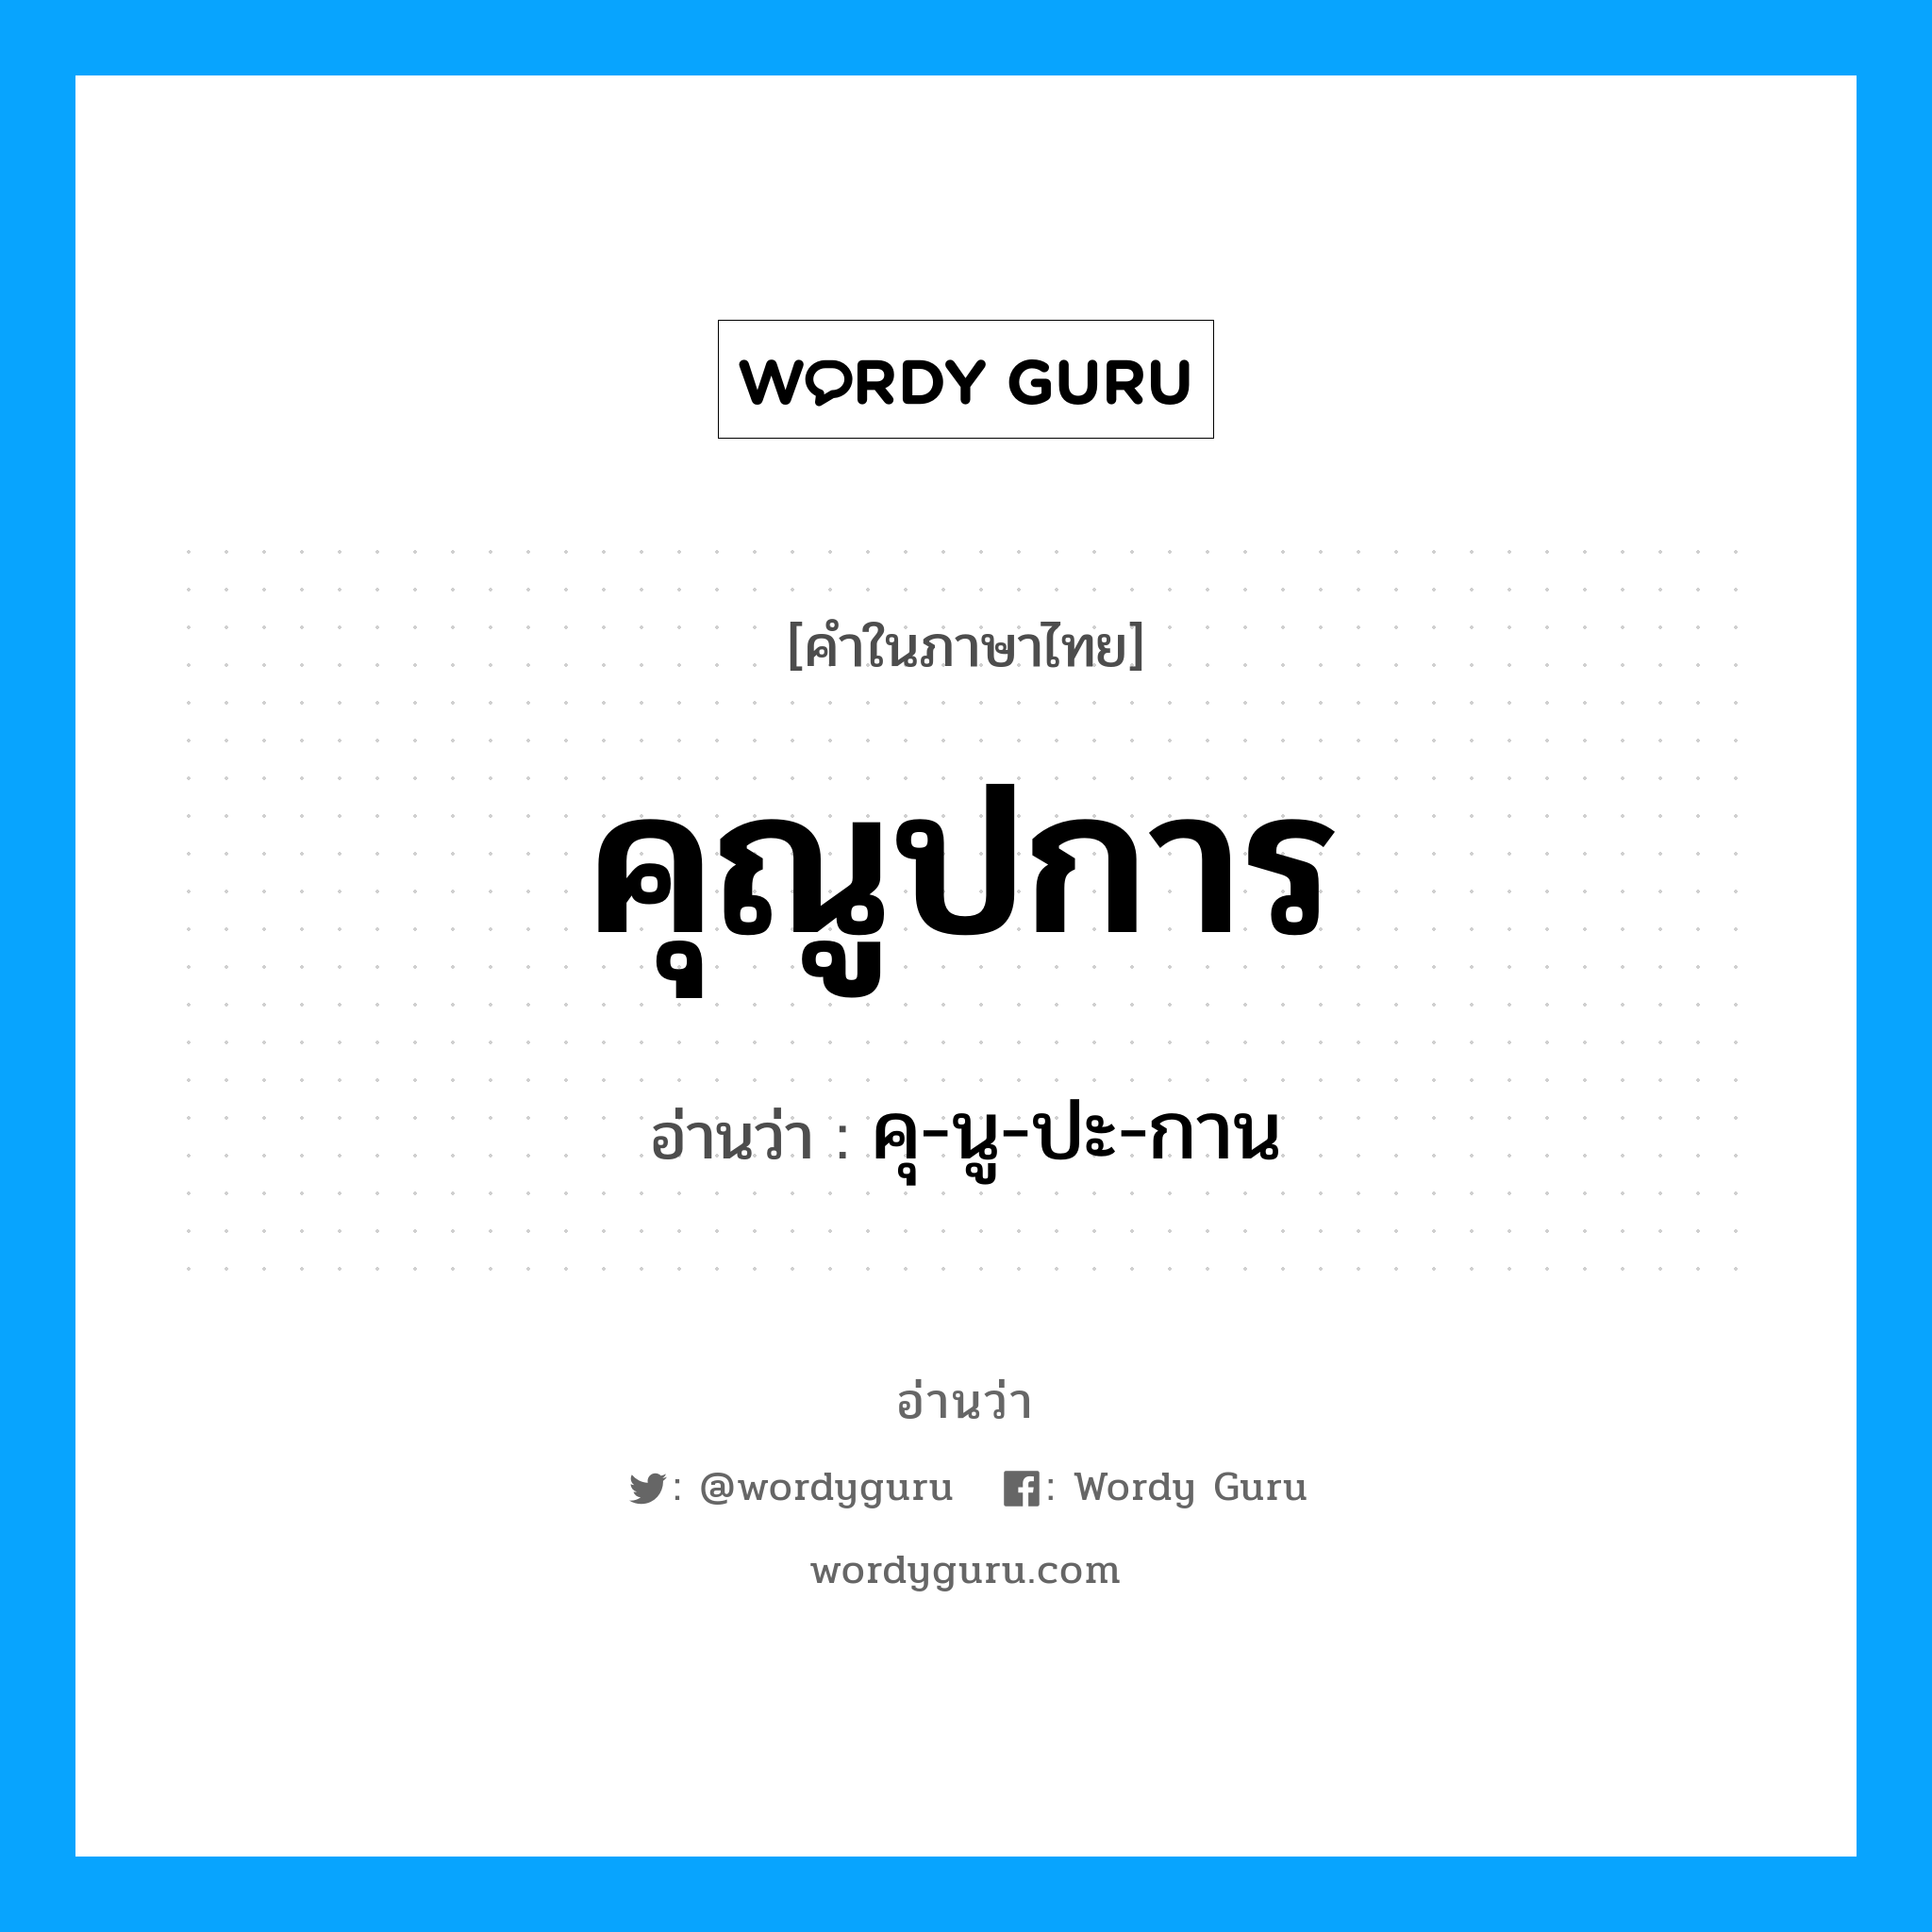 คุ-นู-ปะ-กาน เป็นคำอ่านของคำไหน?, คำในภาษาไทย คุ-นู-ปะ-กาน อ่านว่า คุณูปการ